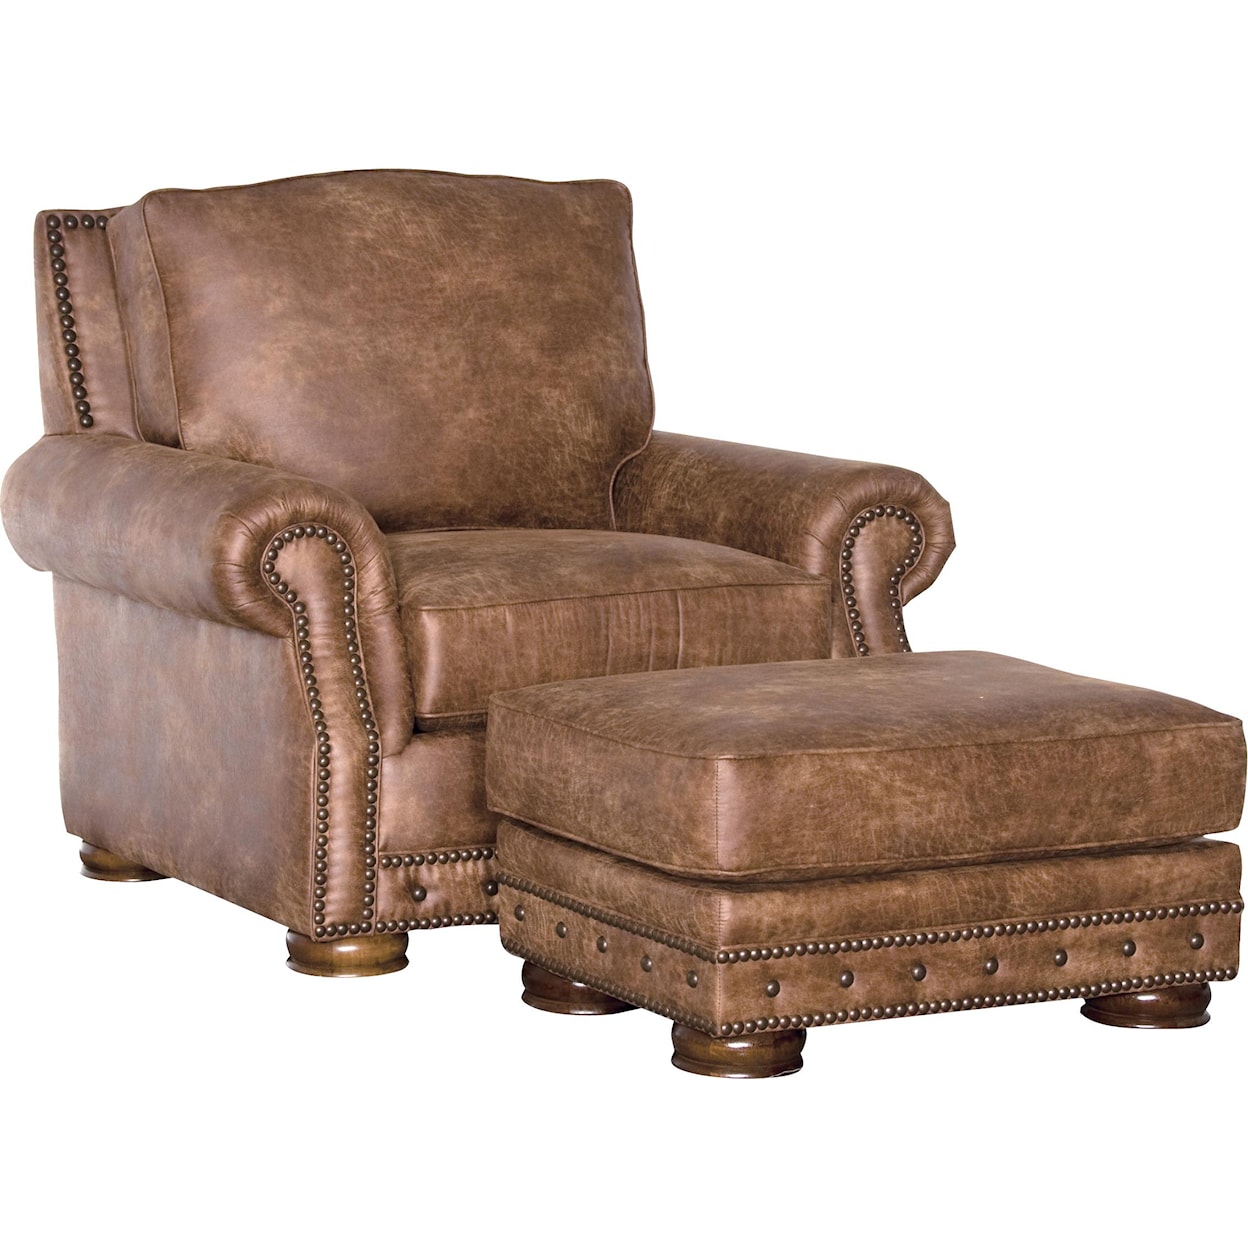 Mayo 2900 Traditional Chair and Ottoman Set